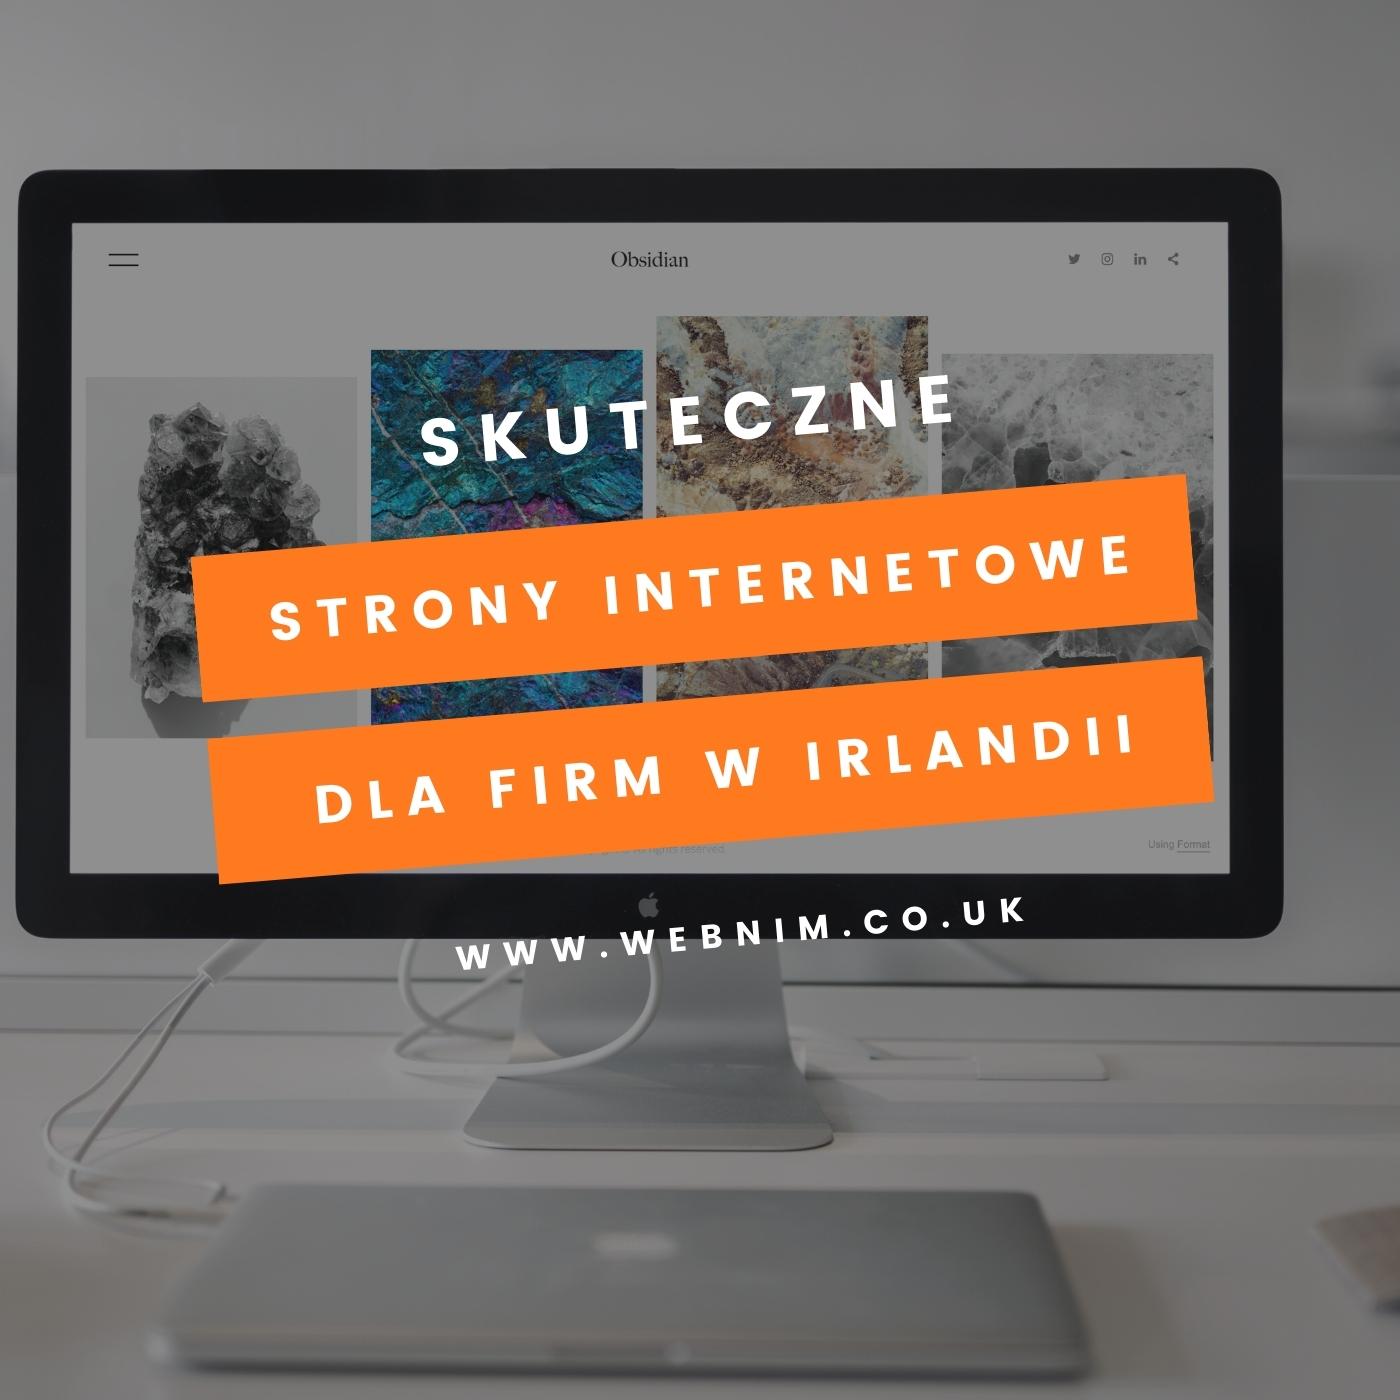 monitor i laptop Apple oraz napis skuteczne strony internetowe dla firm w Irlandii